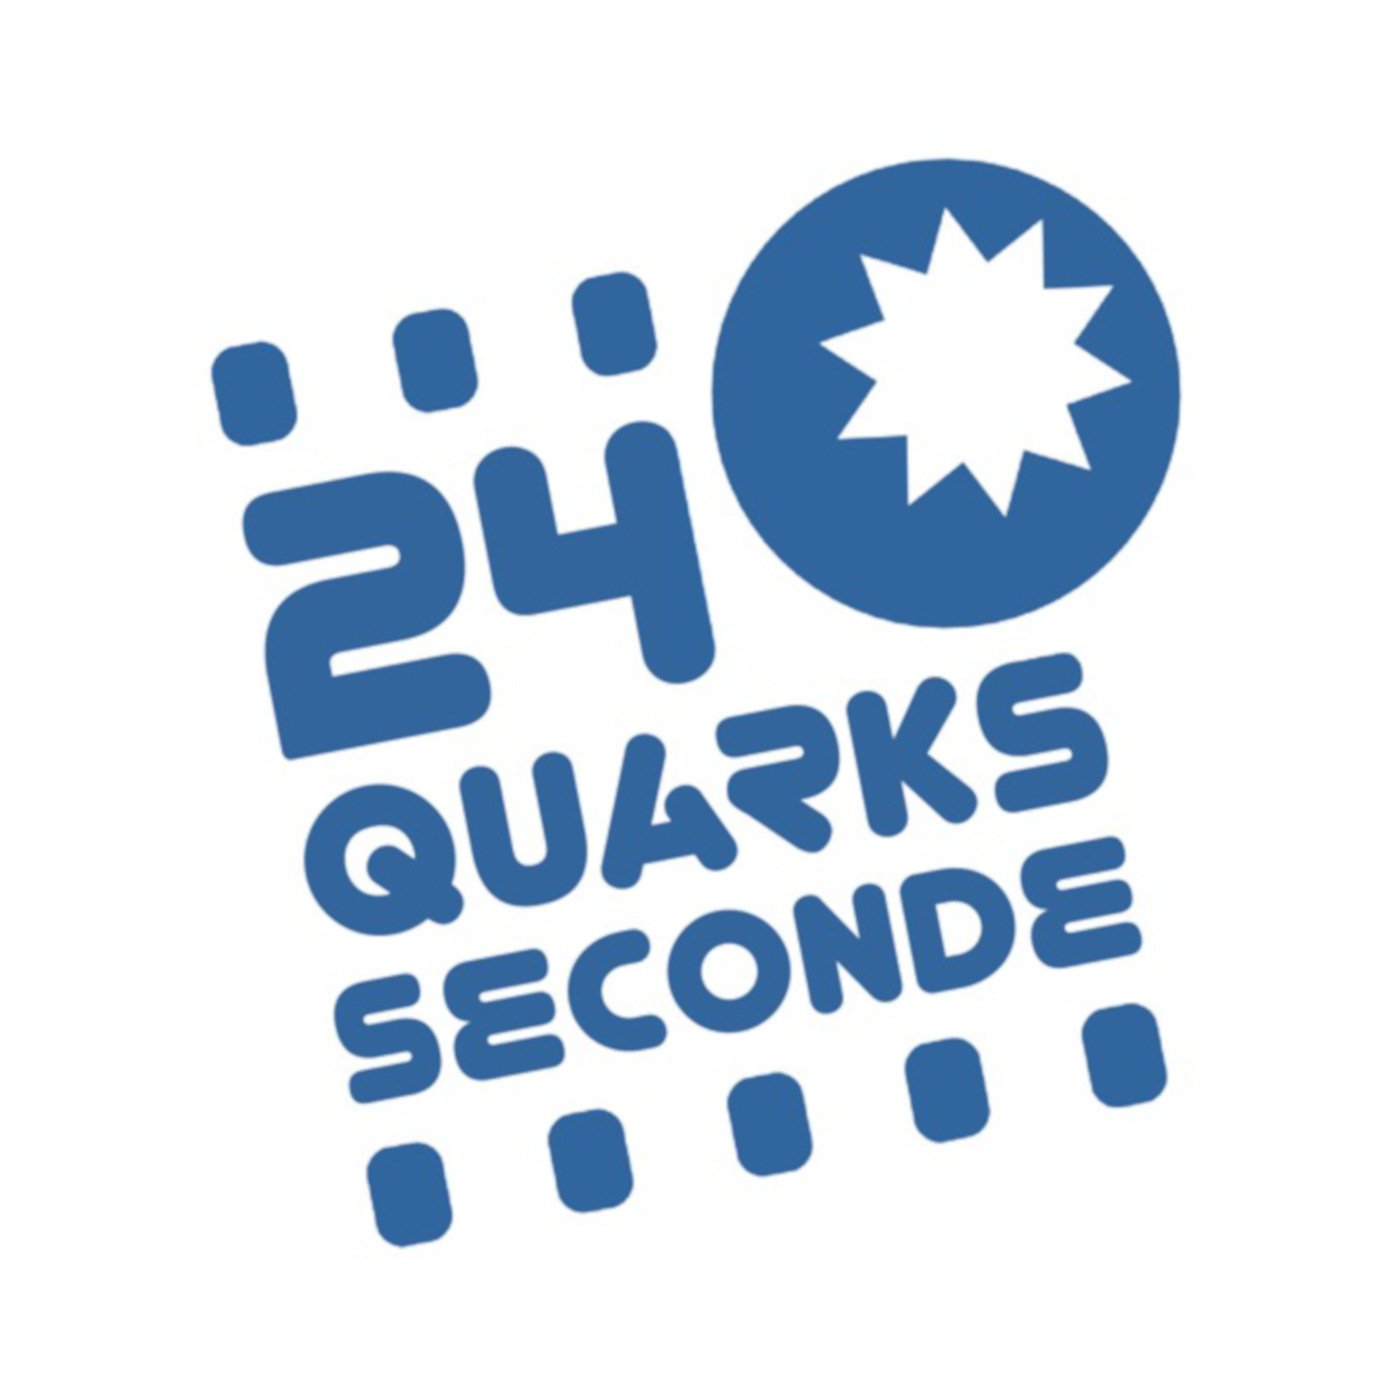 Podcast – 24 Quarks Seconde